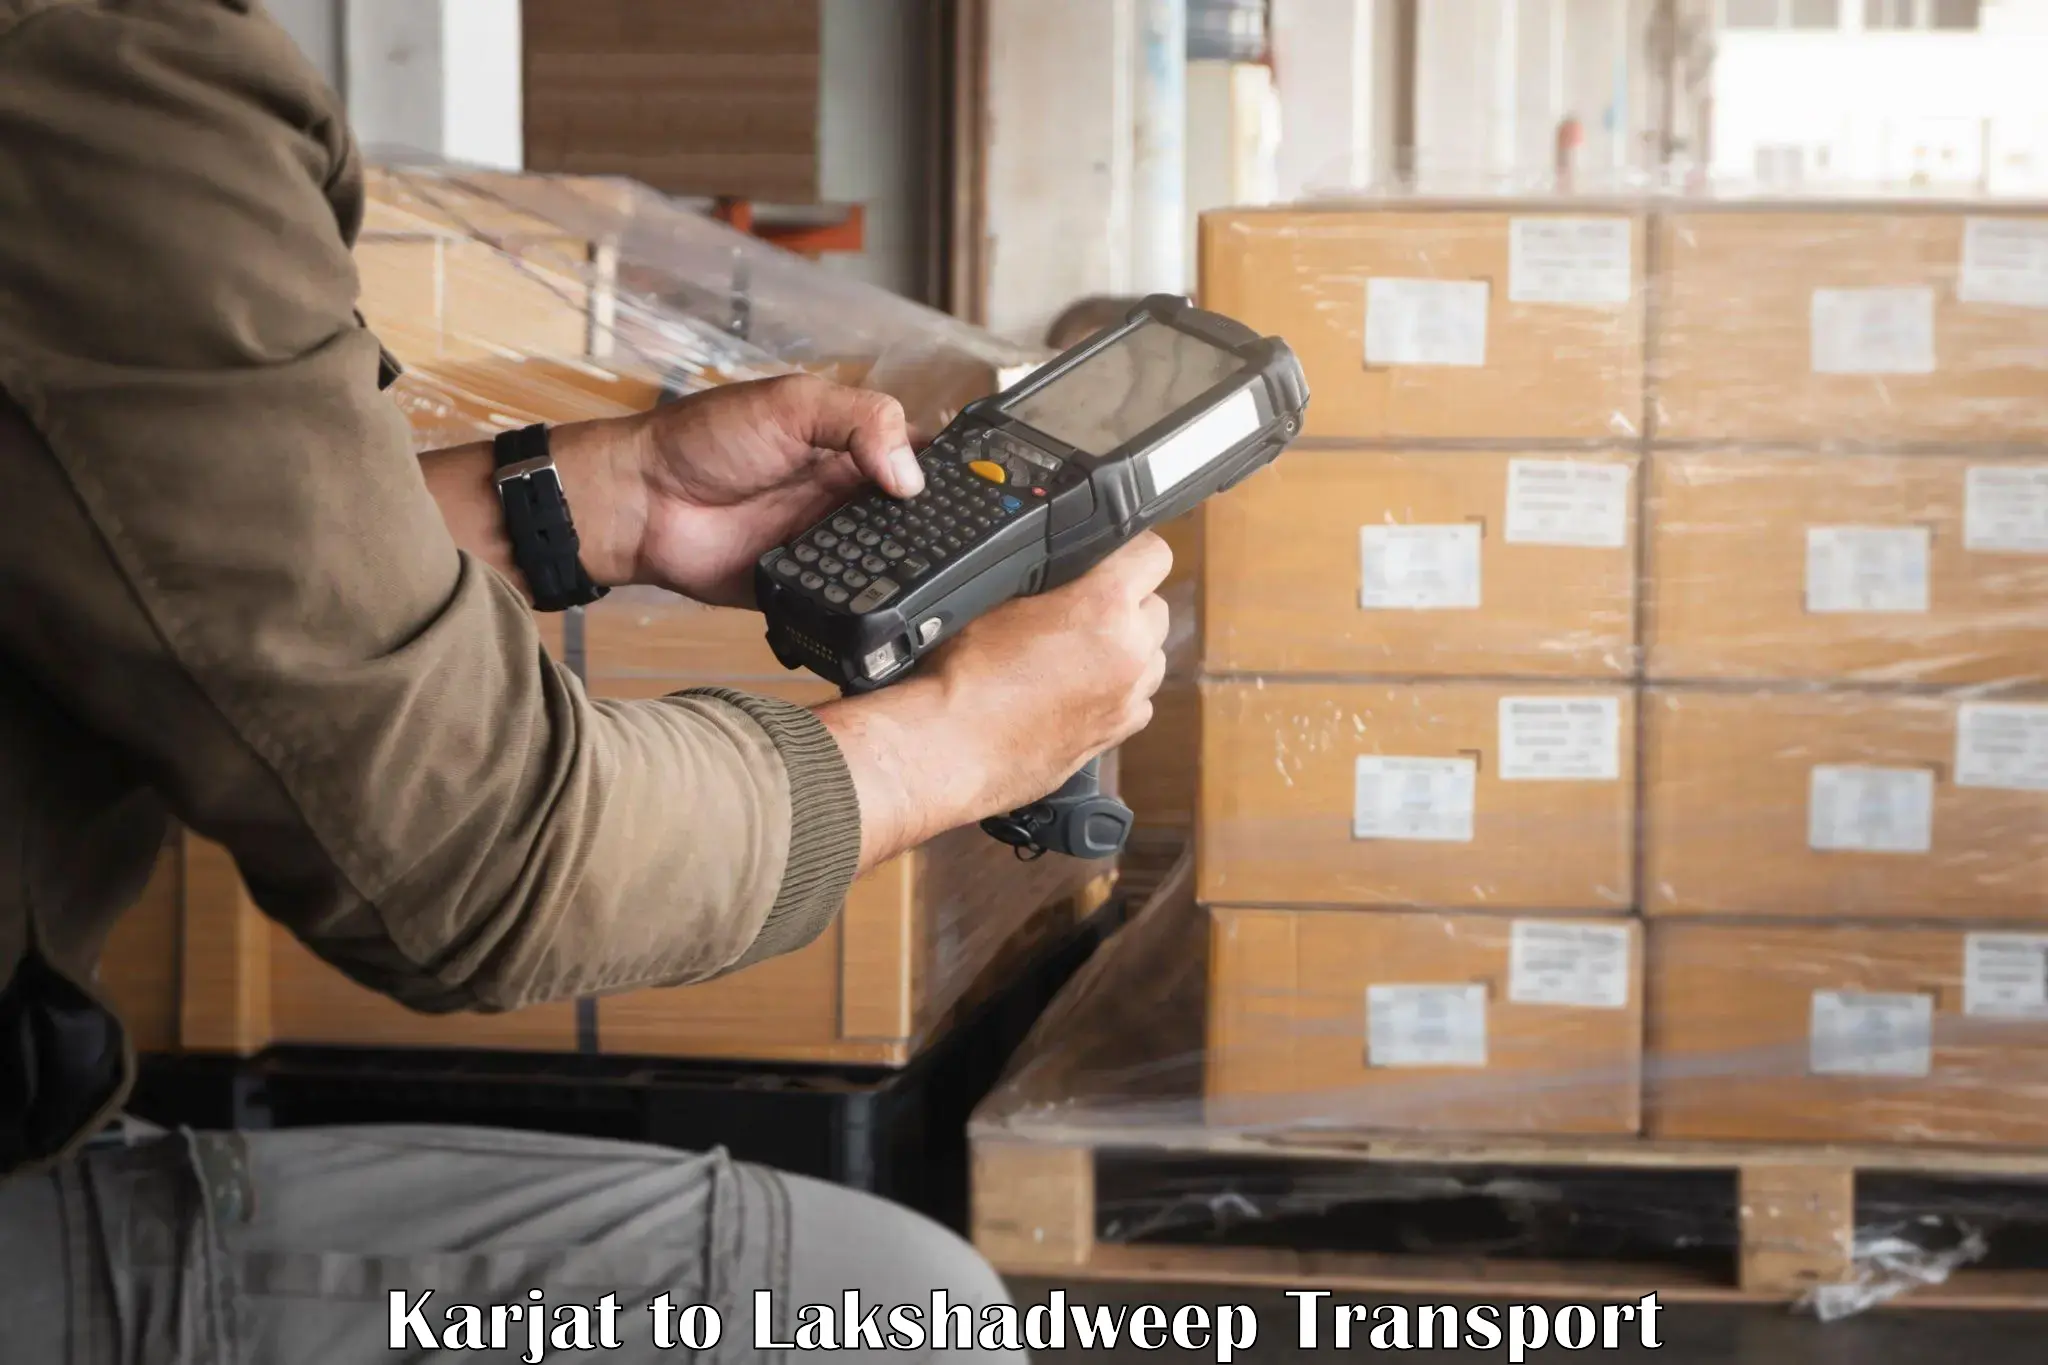 Cargo transportation services Karjat to Lakshadweep